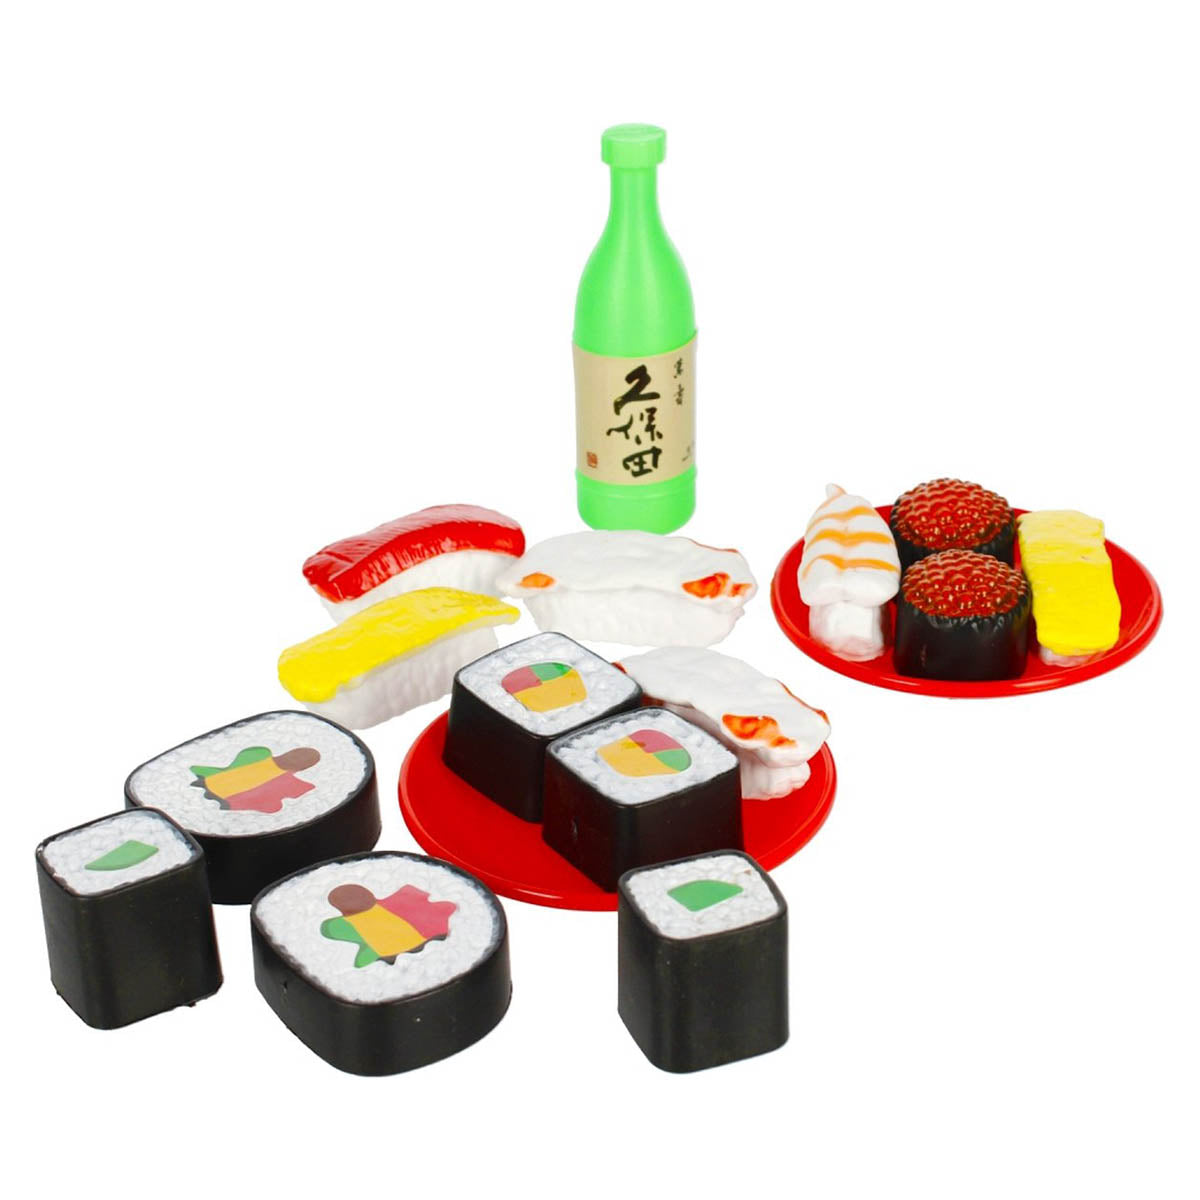 Ariko Spielzeug-Sushi-Set – mit Besteck, Tablett und Sojaschale